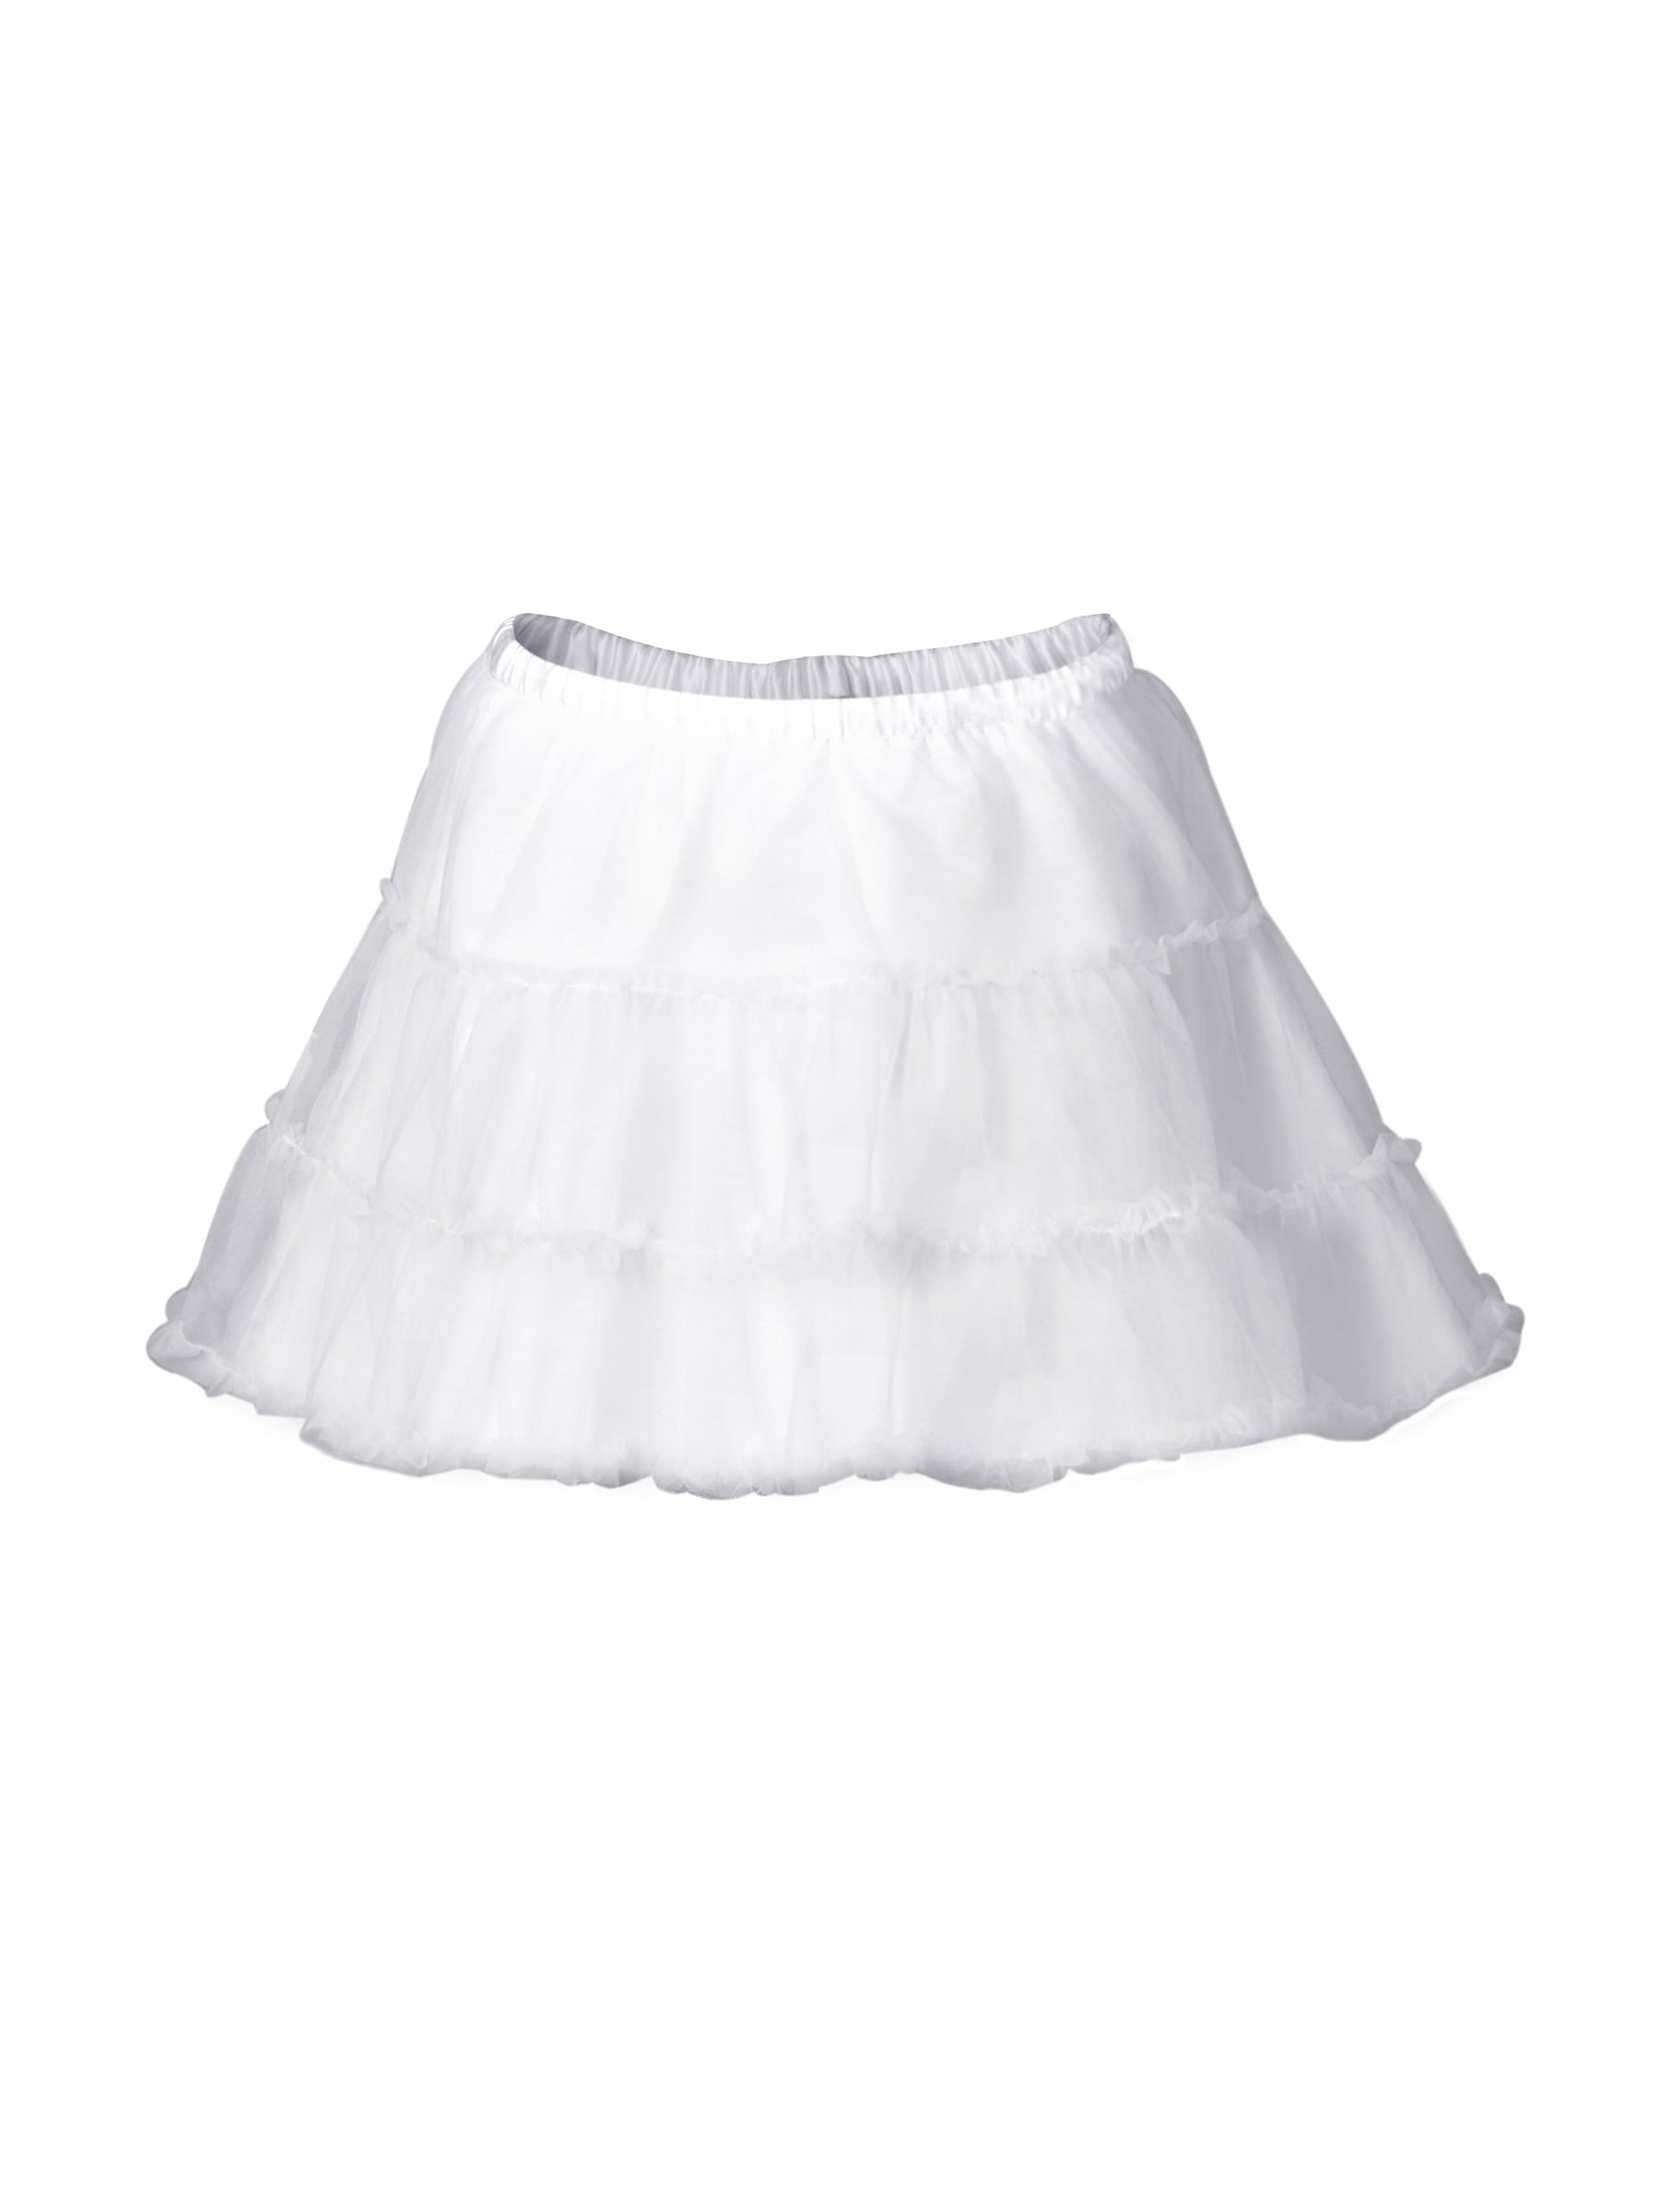 Gini & Jony Girls White Skirt